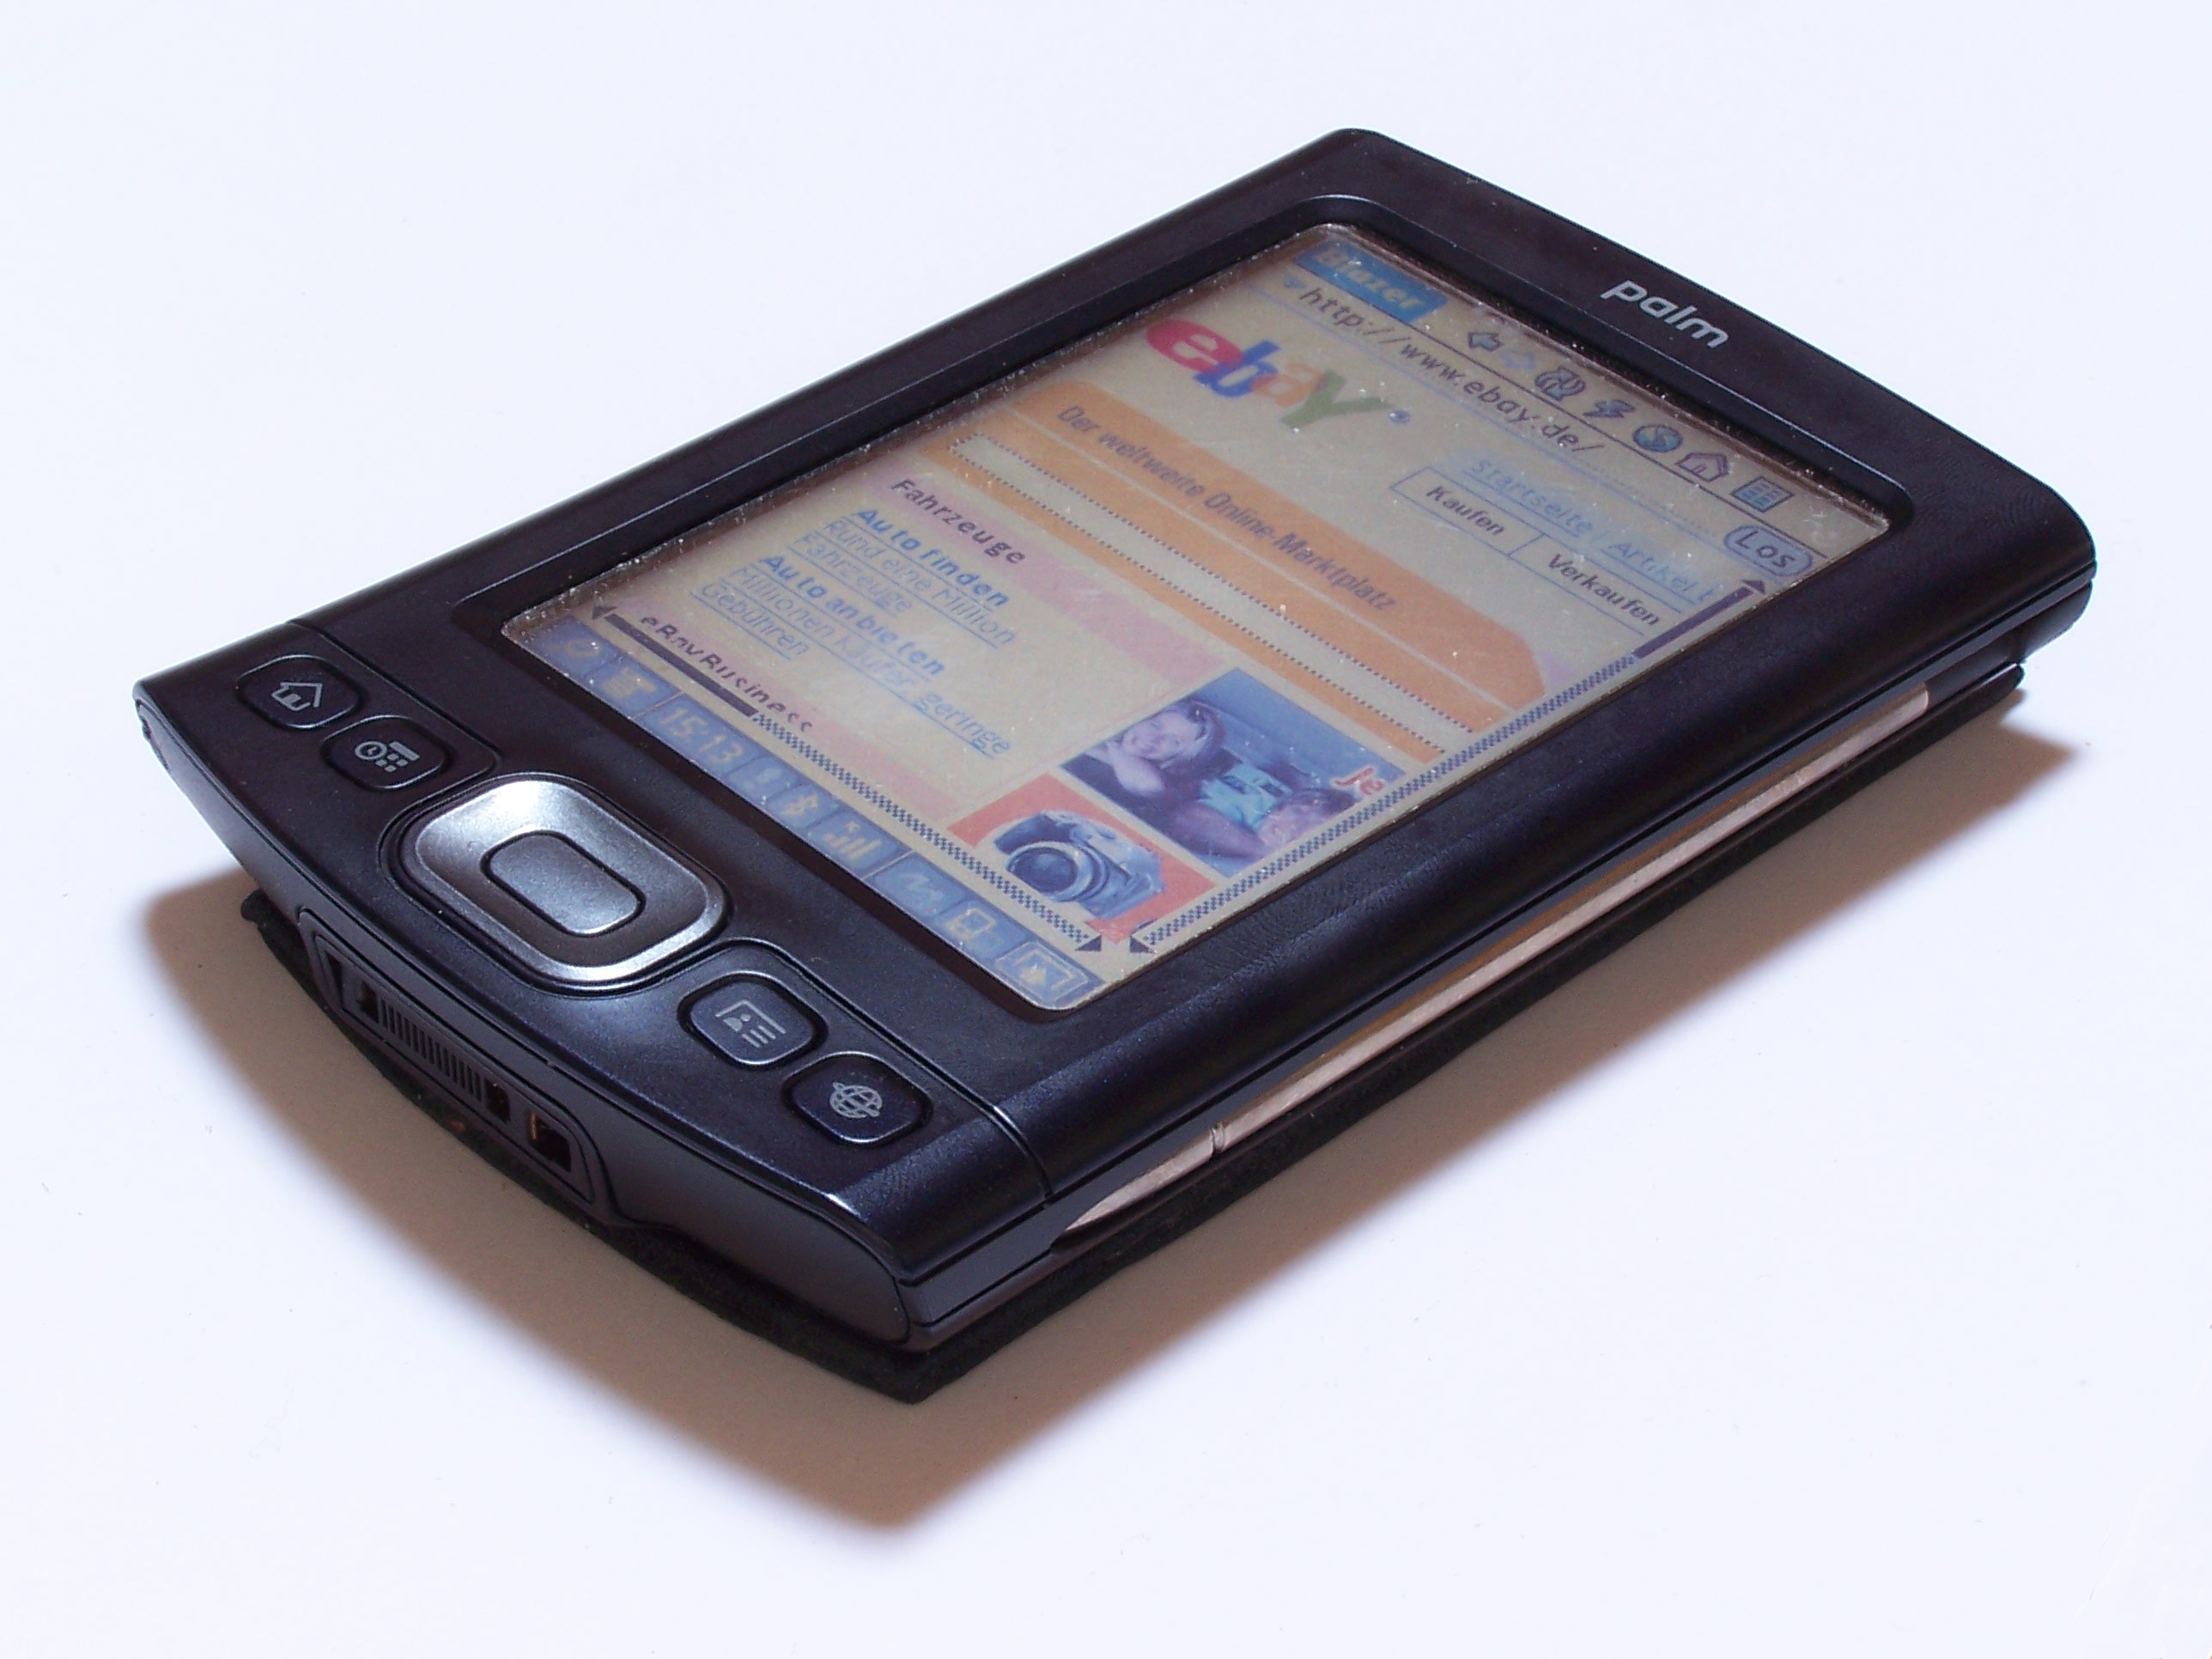  Palm serait en passe de lancer un PDA sous Android… Et on l’avait pas vu venir